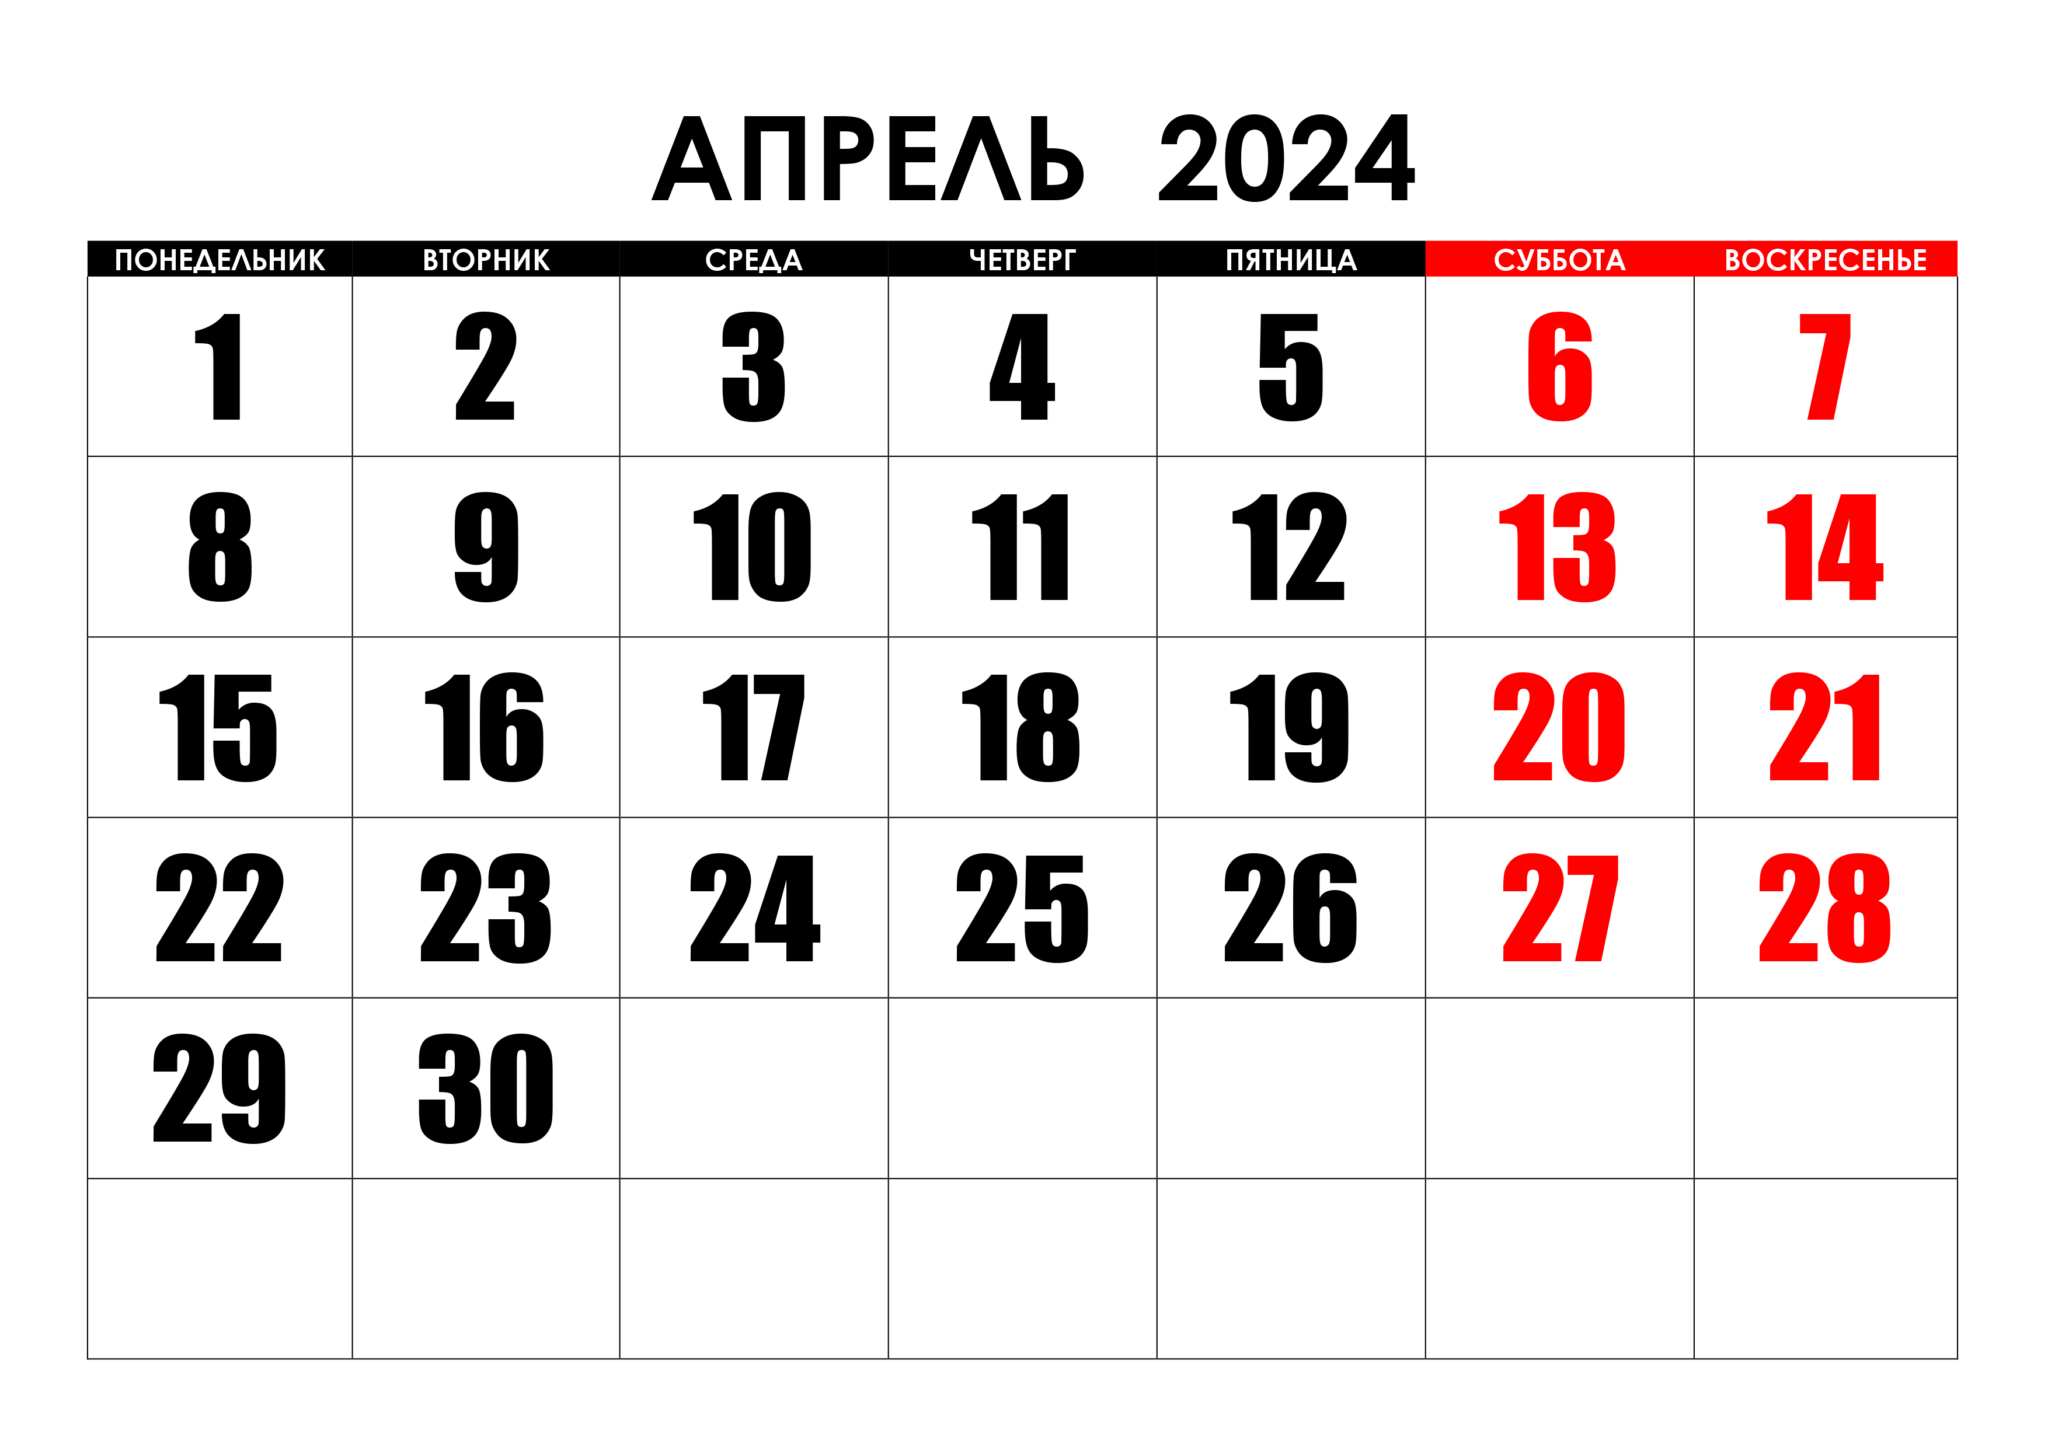 Сколько осталось до 26 апреля 2024 дней. Календарь август 2022. Календарь на май 2022 года. Календарь на август 2022г. Календарь на пвгуст 2022года.